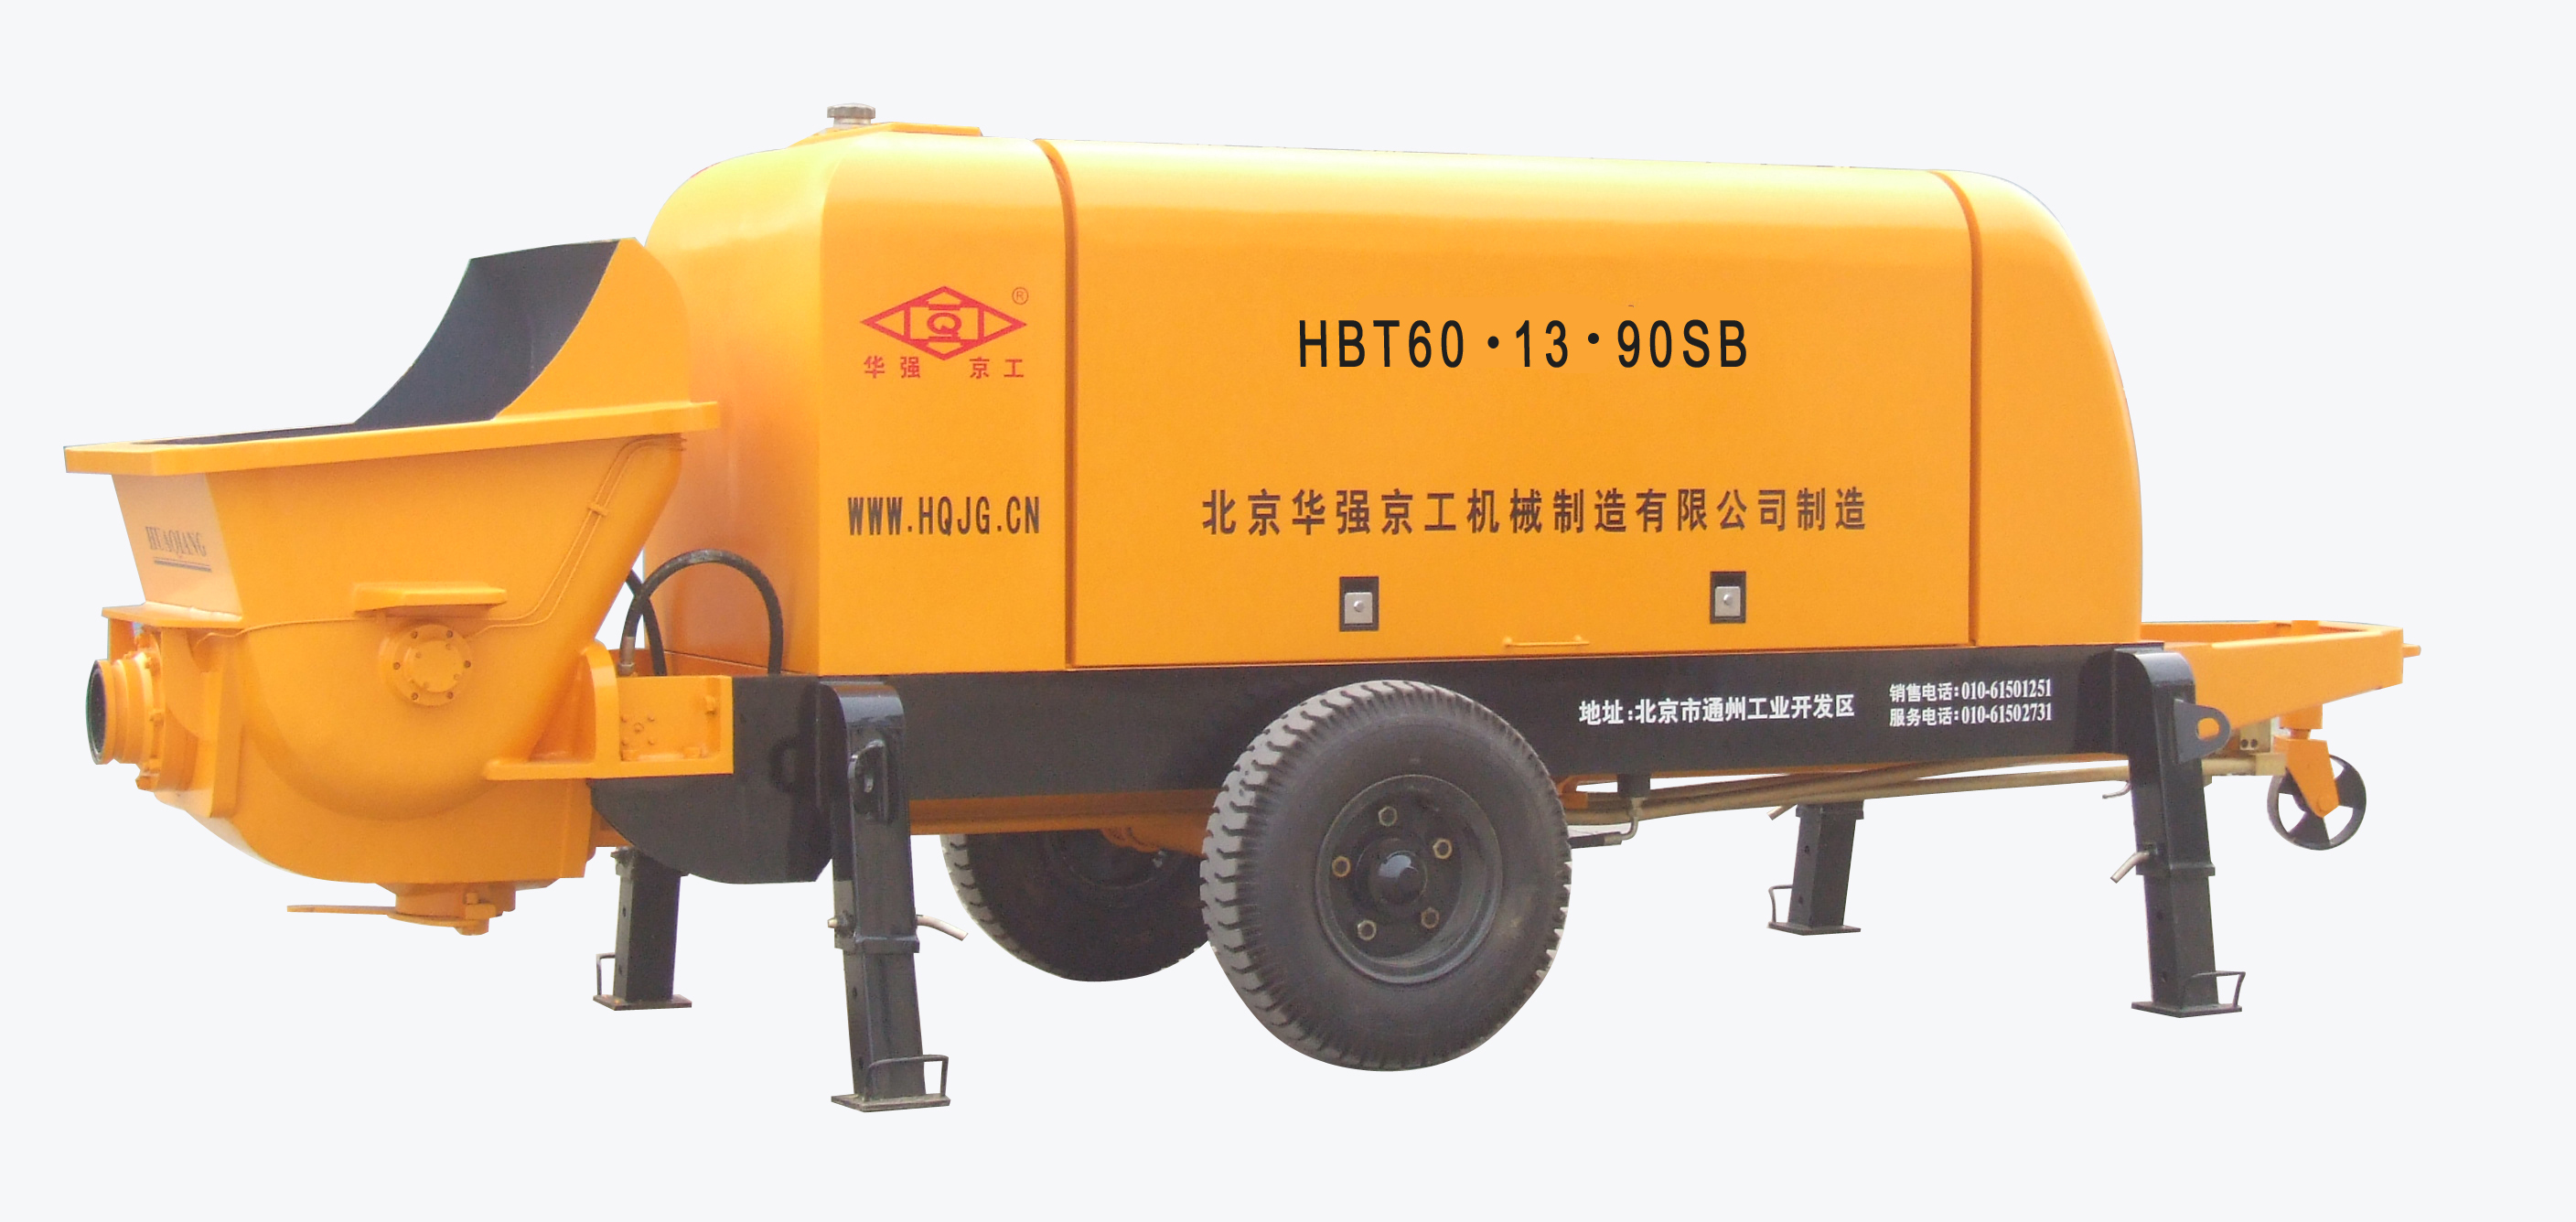 華強京工HBT60.13.90SB拖式電動混凝土輸送泵高清圖 - 外觀